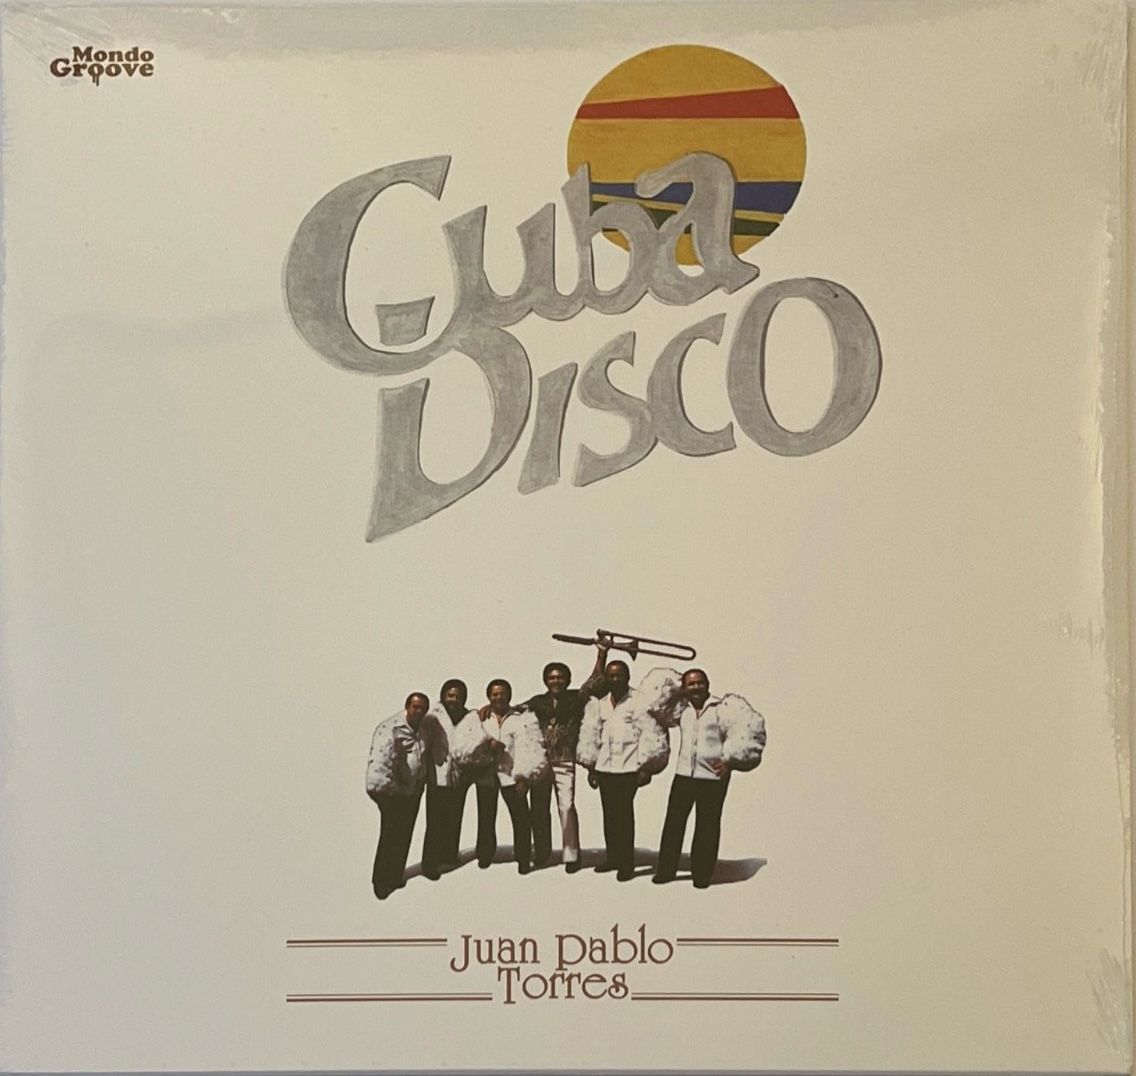 Juan Pablo Torres – Cuba Disco